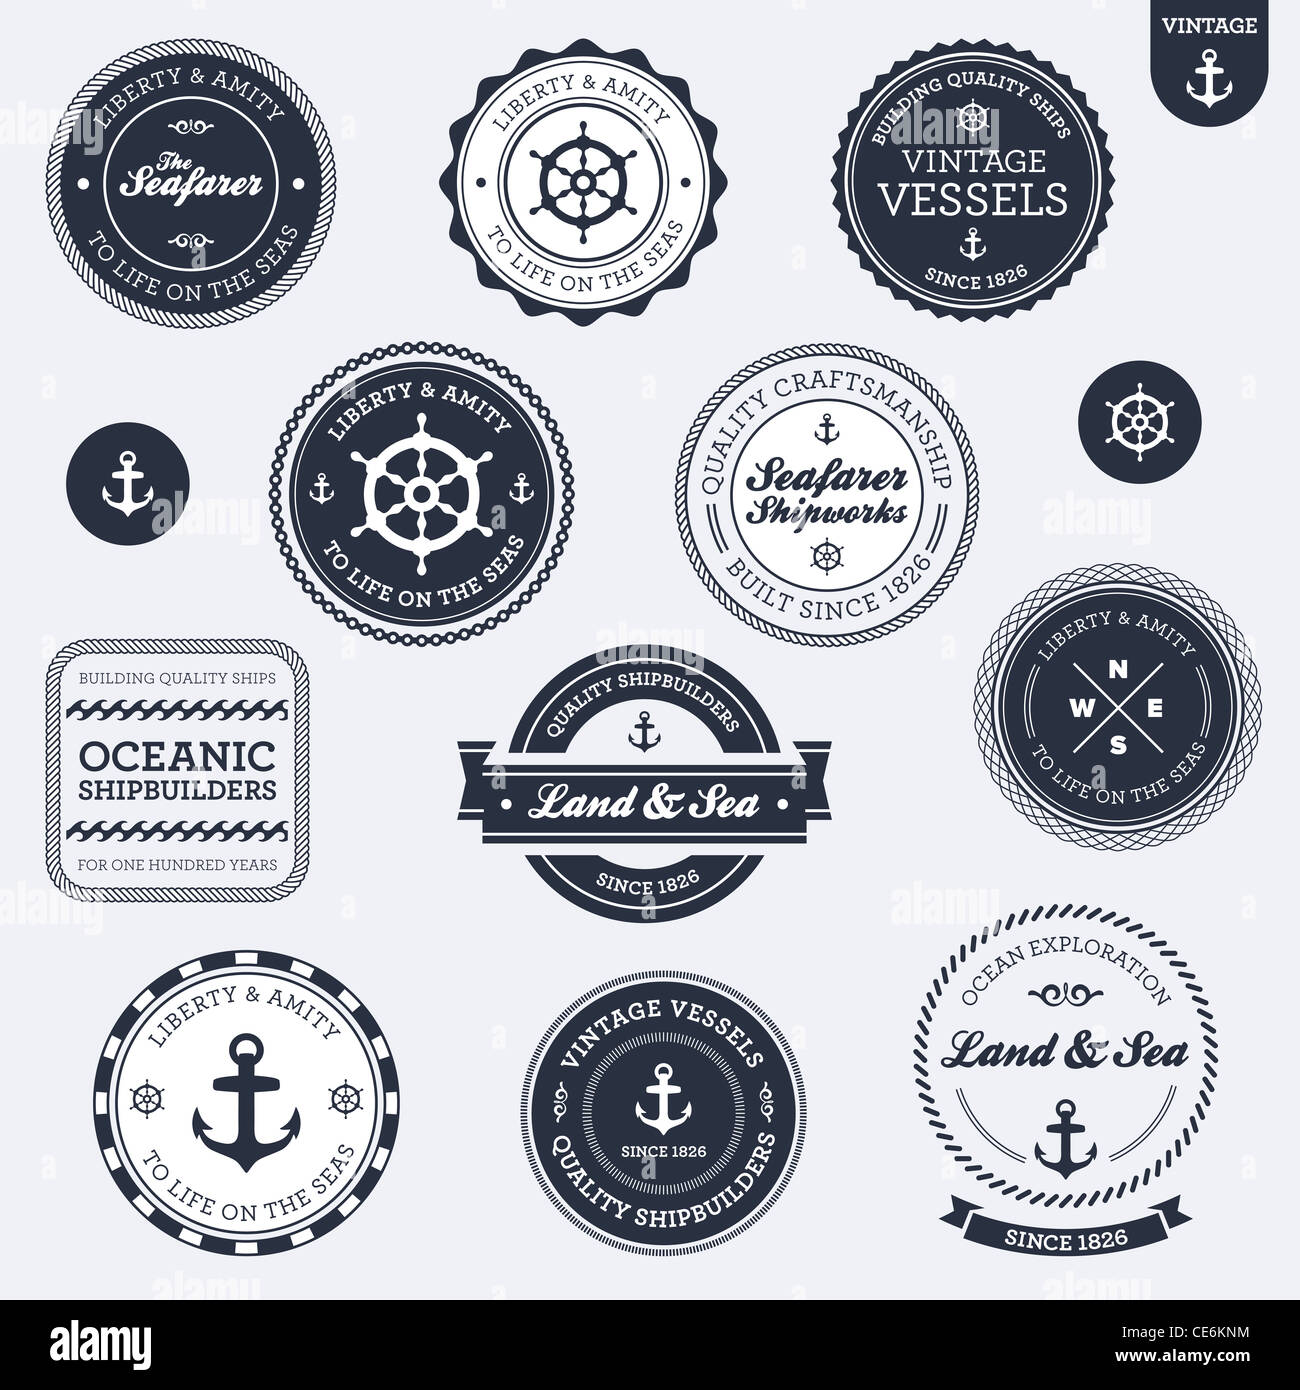 Conjunto de vintage retro insignias y etiquetas de náutica Foto de stock